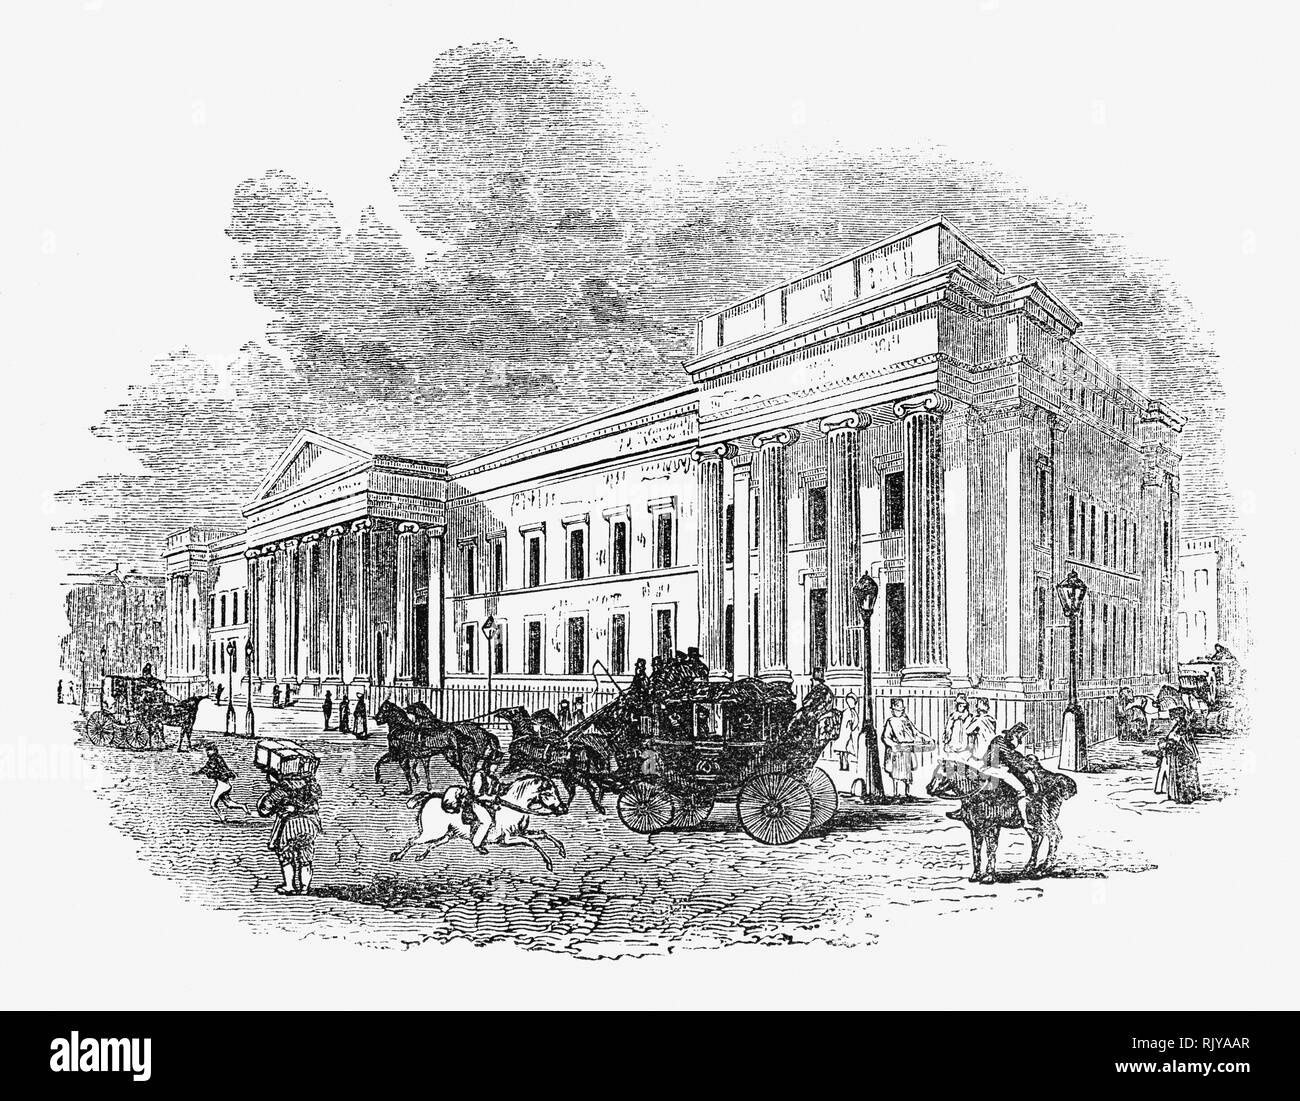 Das General Post Office auf der östlichen Seite von St. Martin's Le Grand in der City von London zwischen 1825 und 1829 gebaut, nach den Entwürfen von Robert Smirke, war der Main Post Office für London zwischen 1829 und 1910, der Sitz des General Post Office des Vereinigten Königreichs von Großbritannien und Irland und England's erste Zweck gebauten Post. Es wurde 1912 abgerissen. Stockfoto